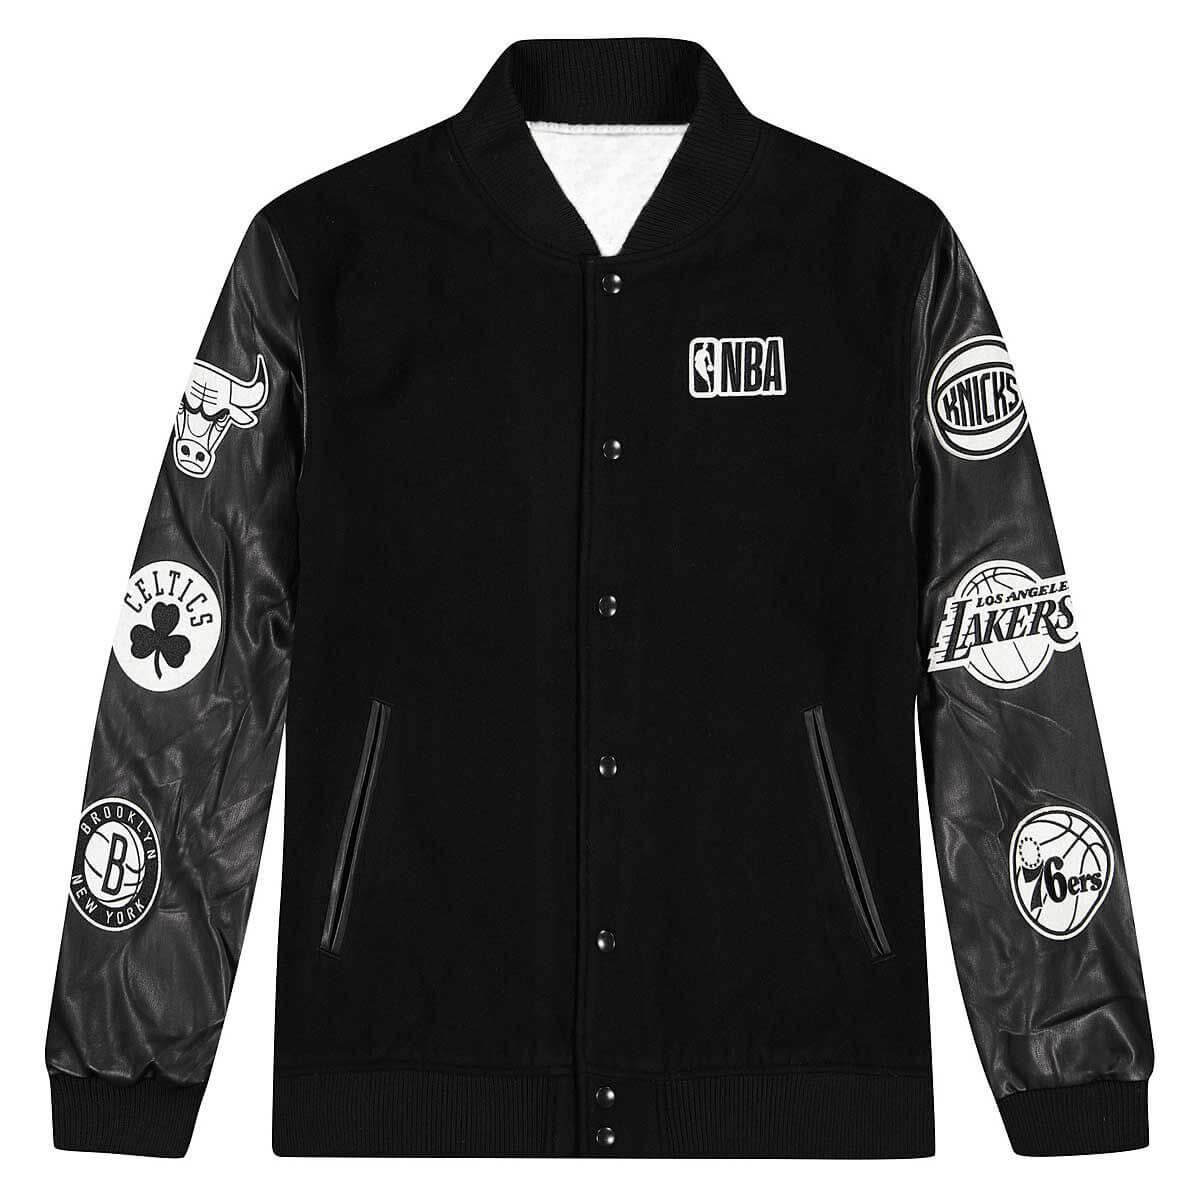 Chicago Bulls NBA Varsity jacket | Bulls Letterman jacket